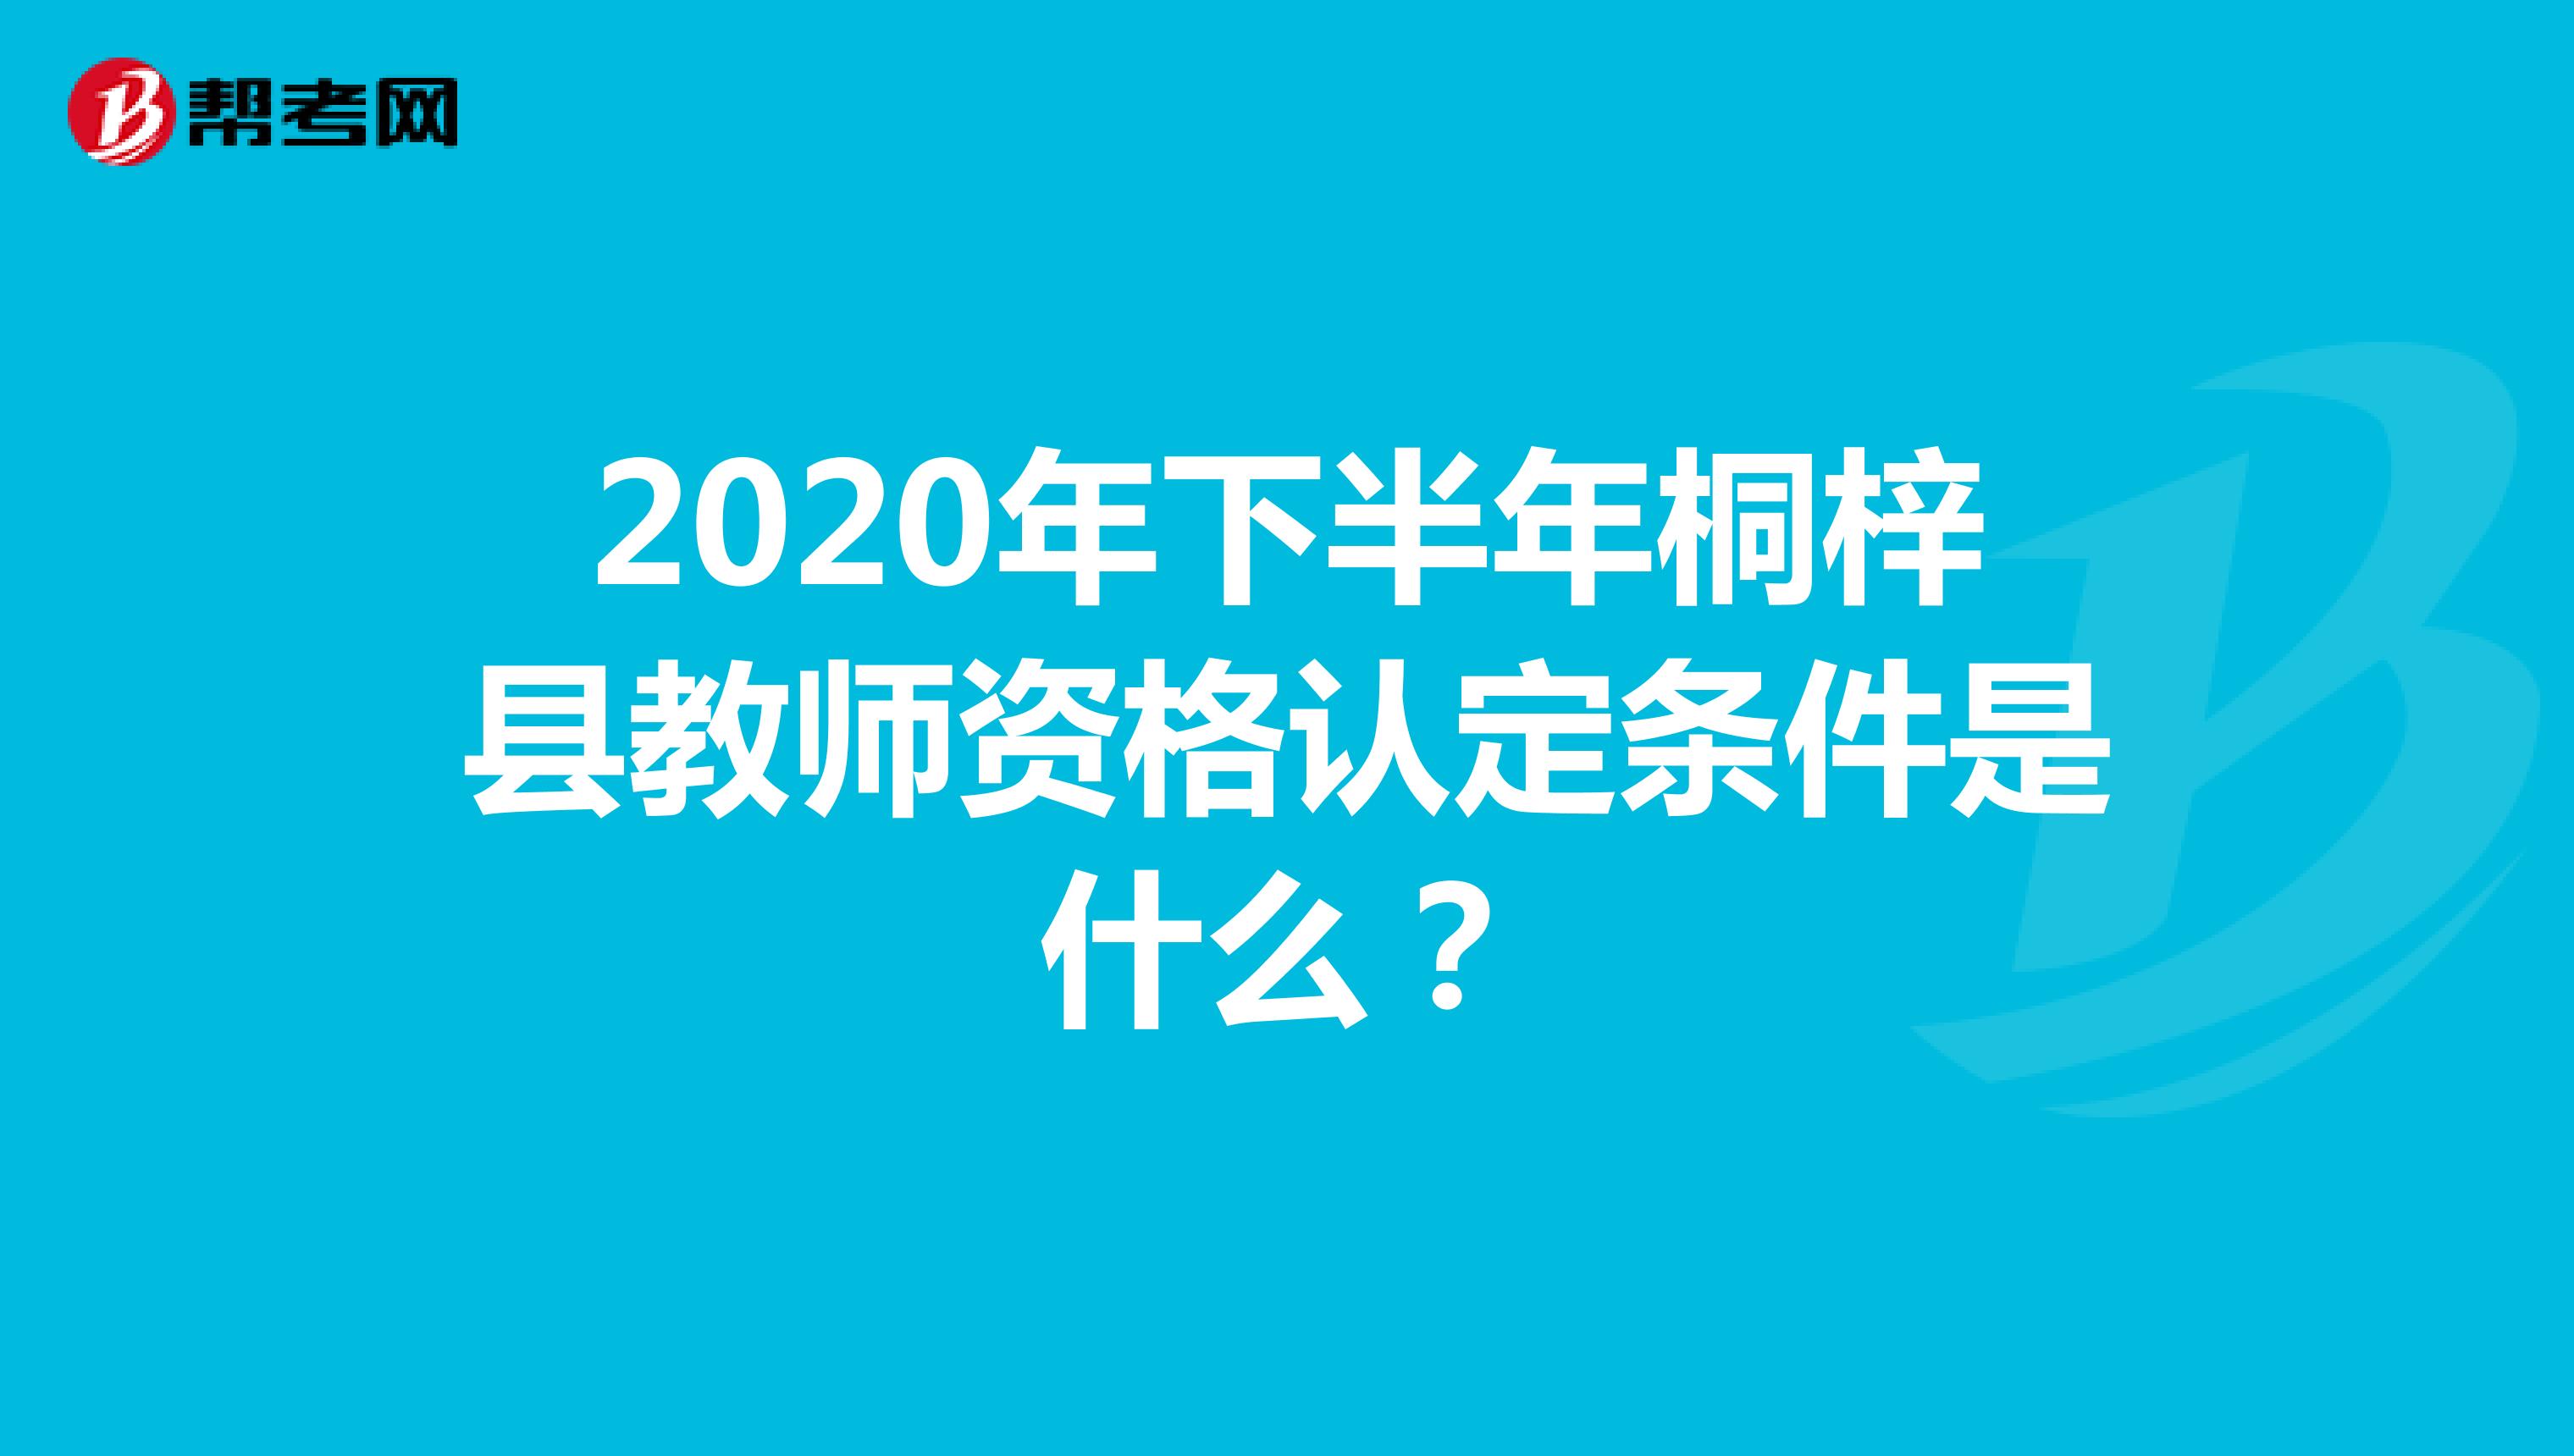 2020年下半年桐梓县教师资格认定条件是什么？